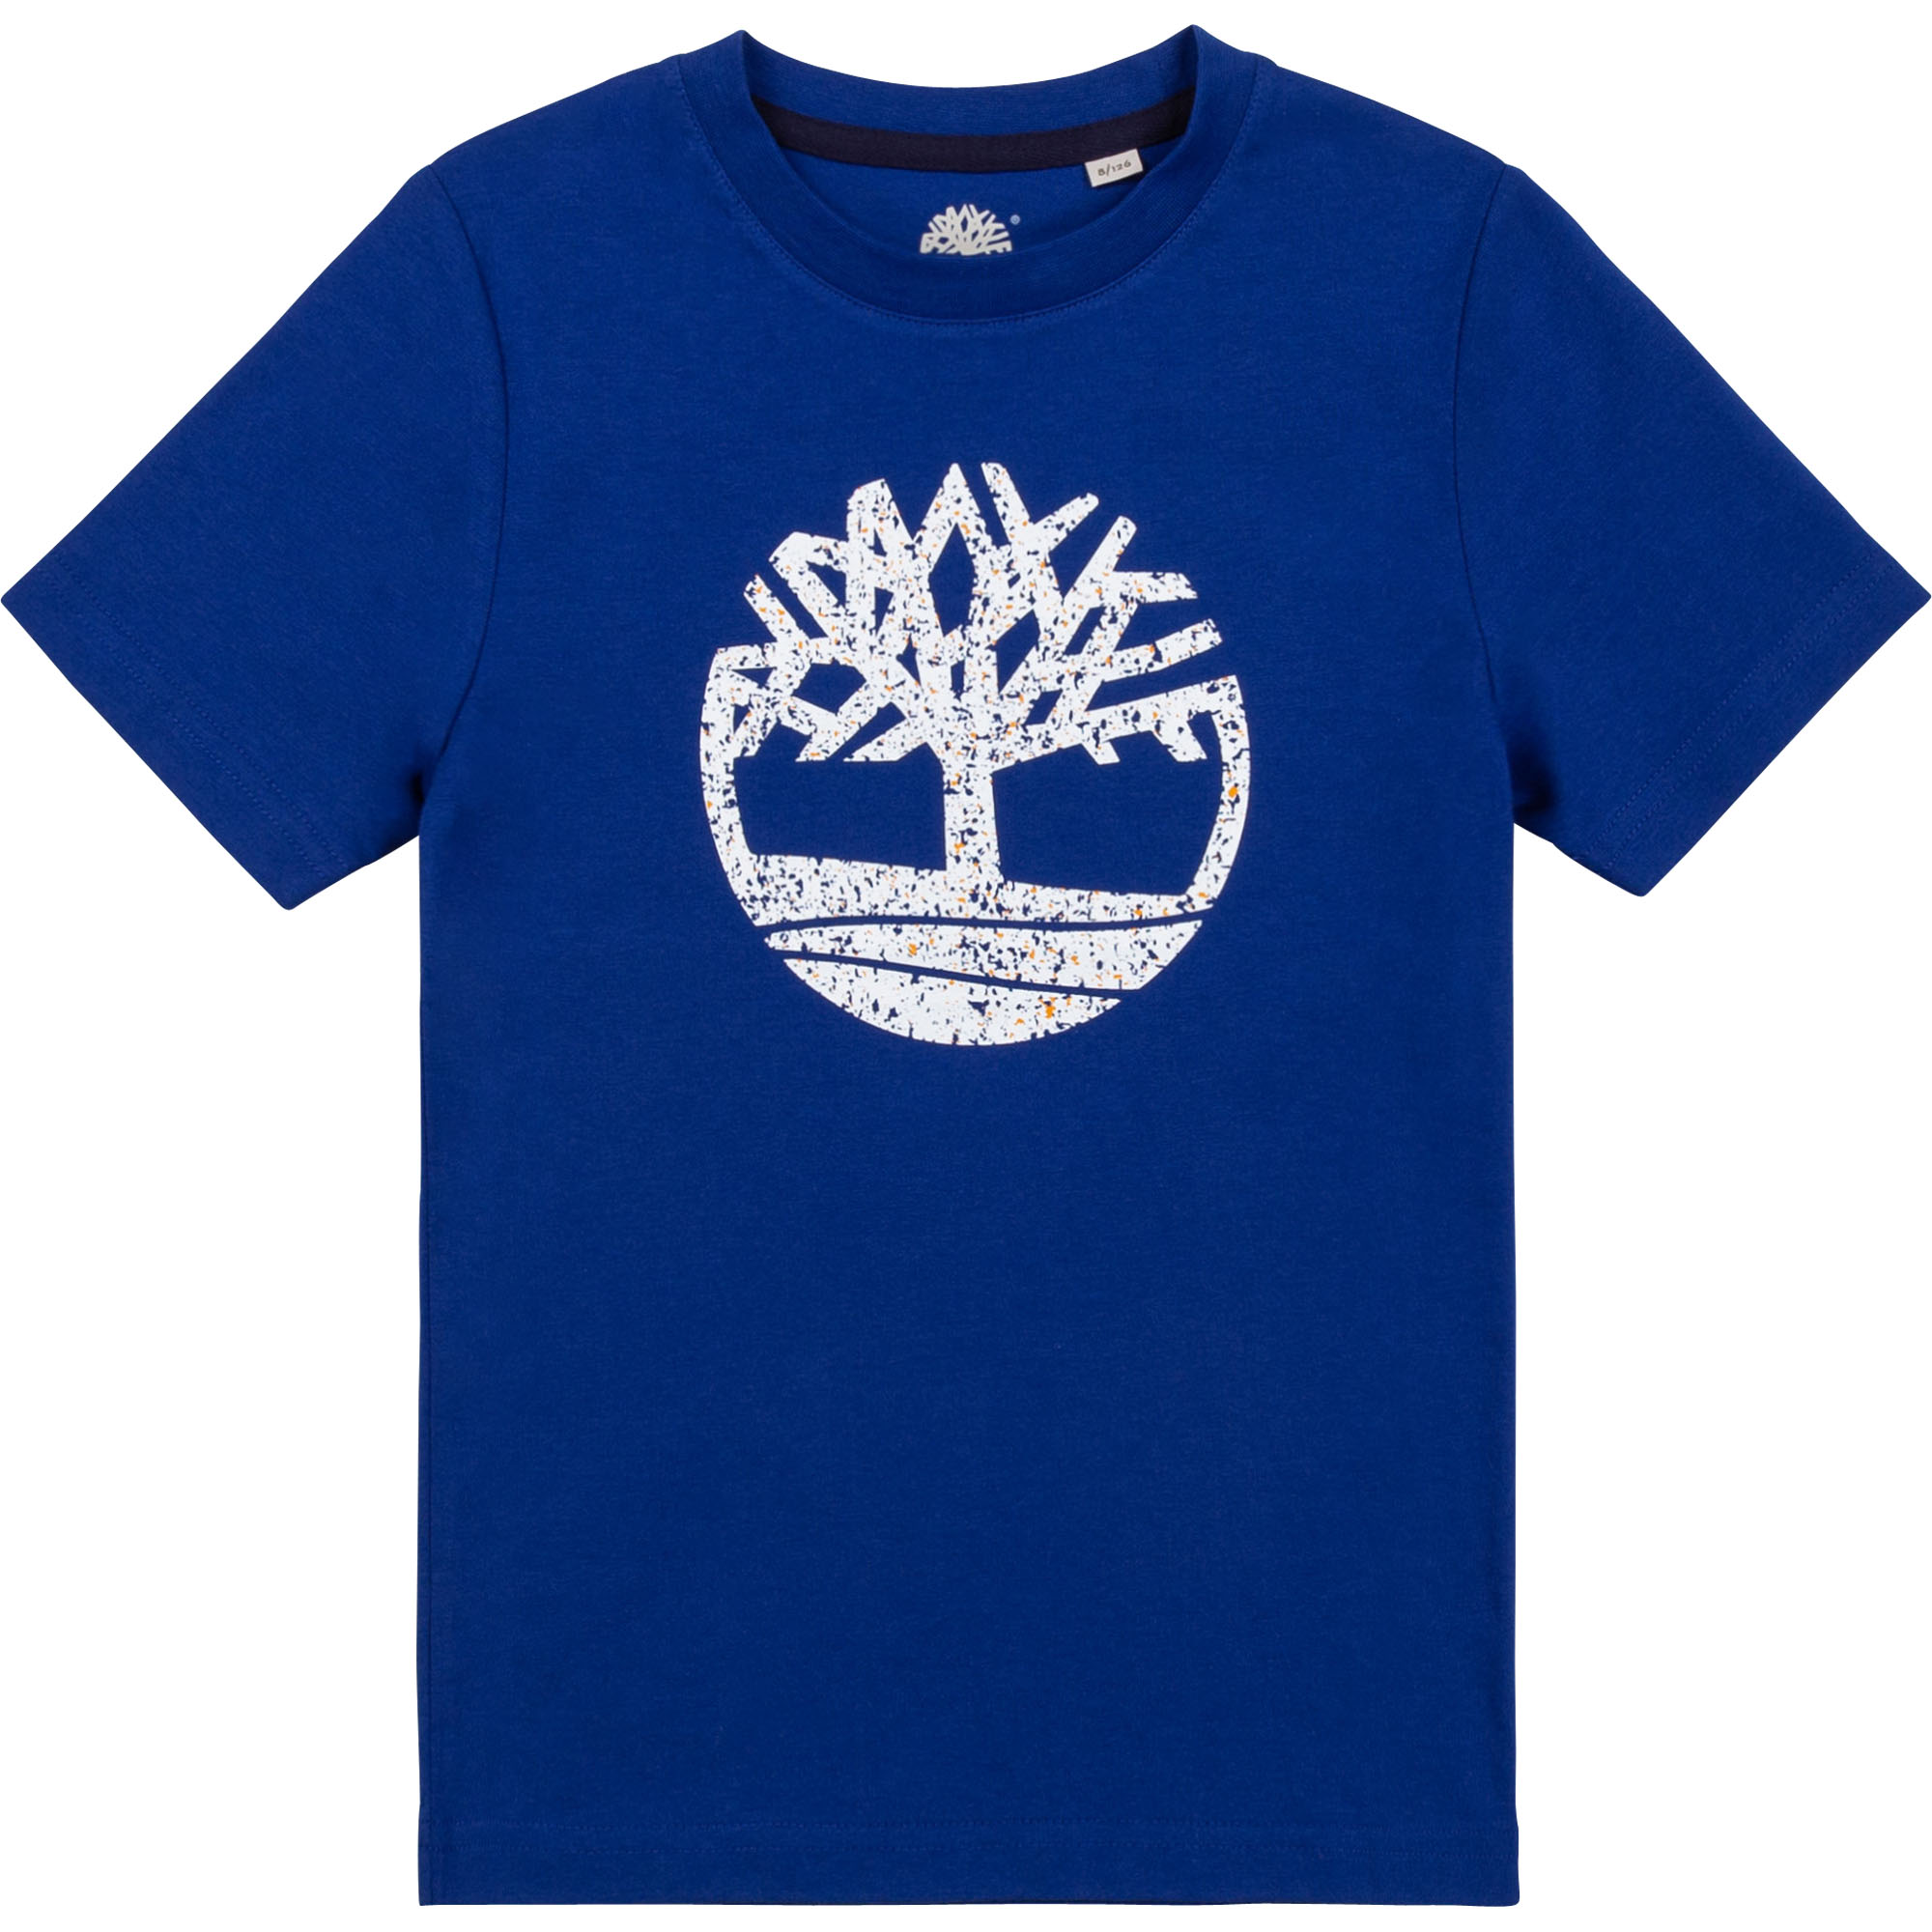 Kurzärmeliges Baumwoll-T-Shirt TIMBERLAND Für JUNGE